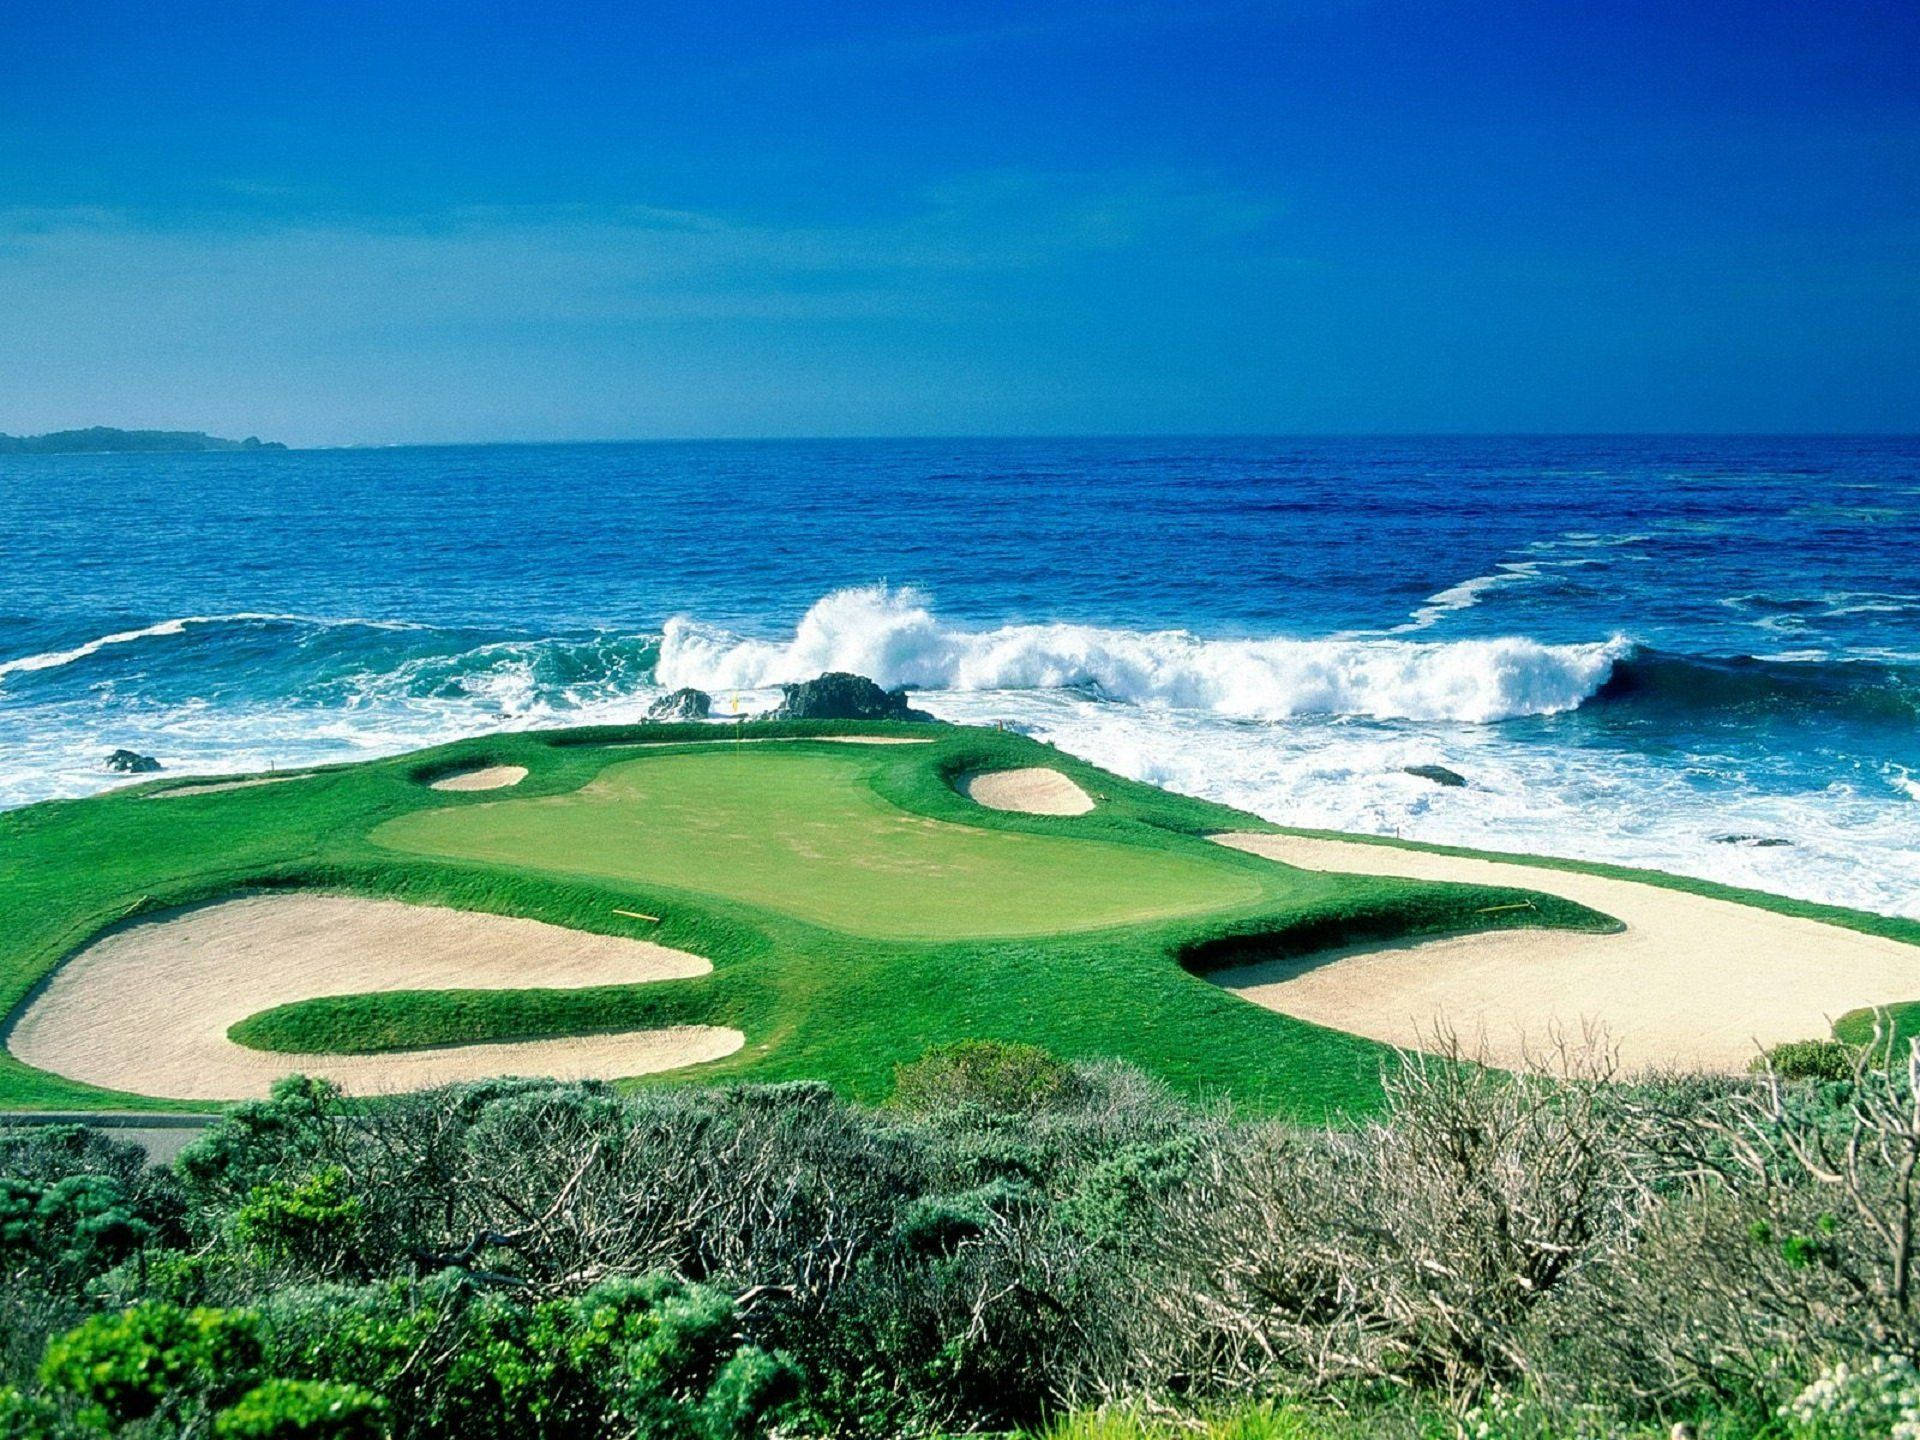 Ultra HD Golf Course Blue Ocean Wallpaper